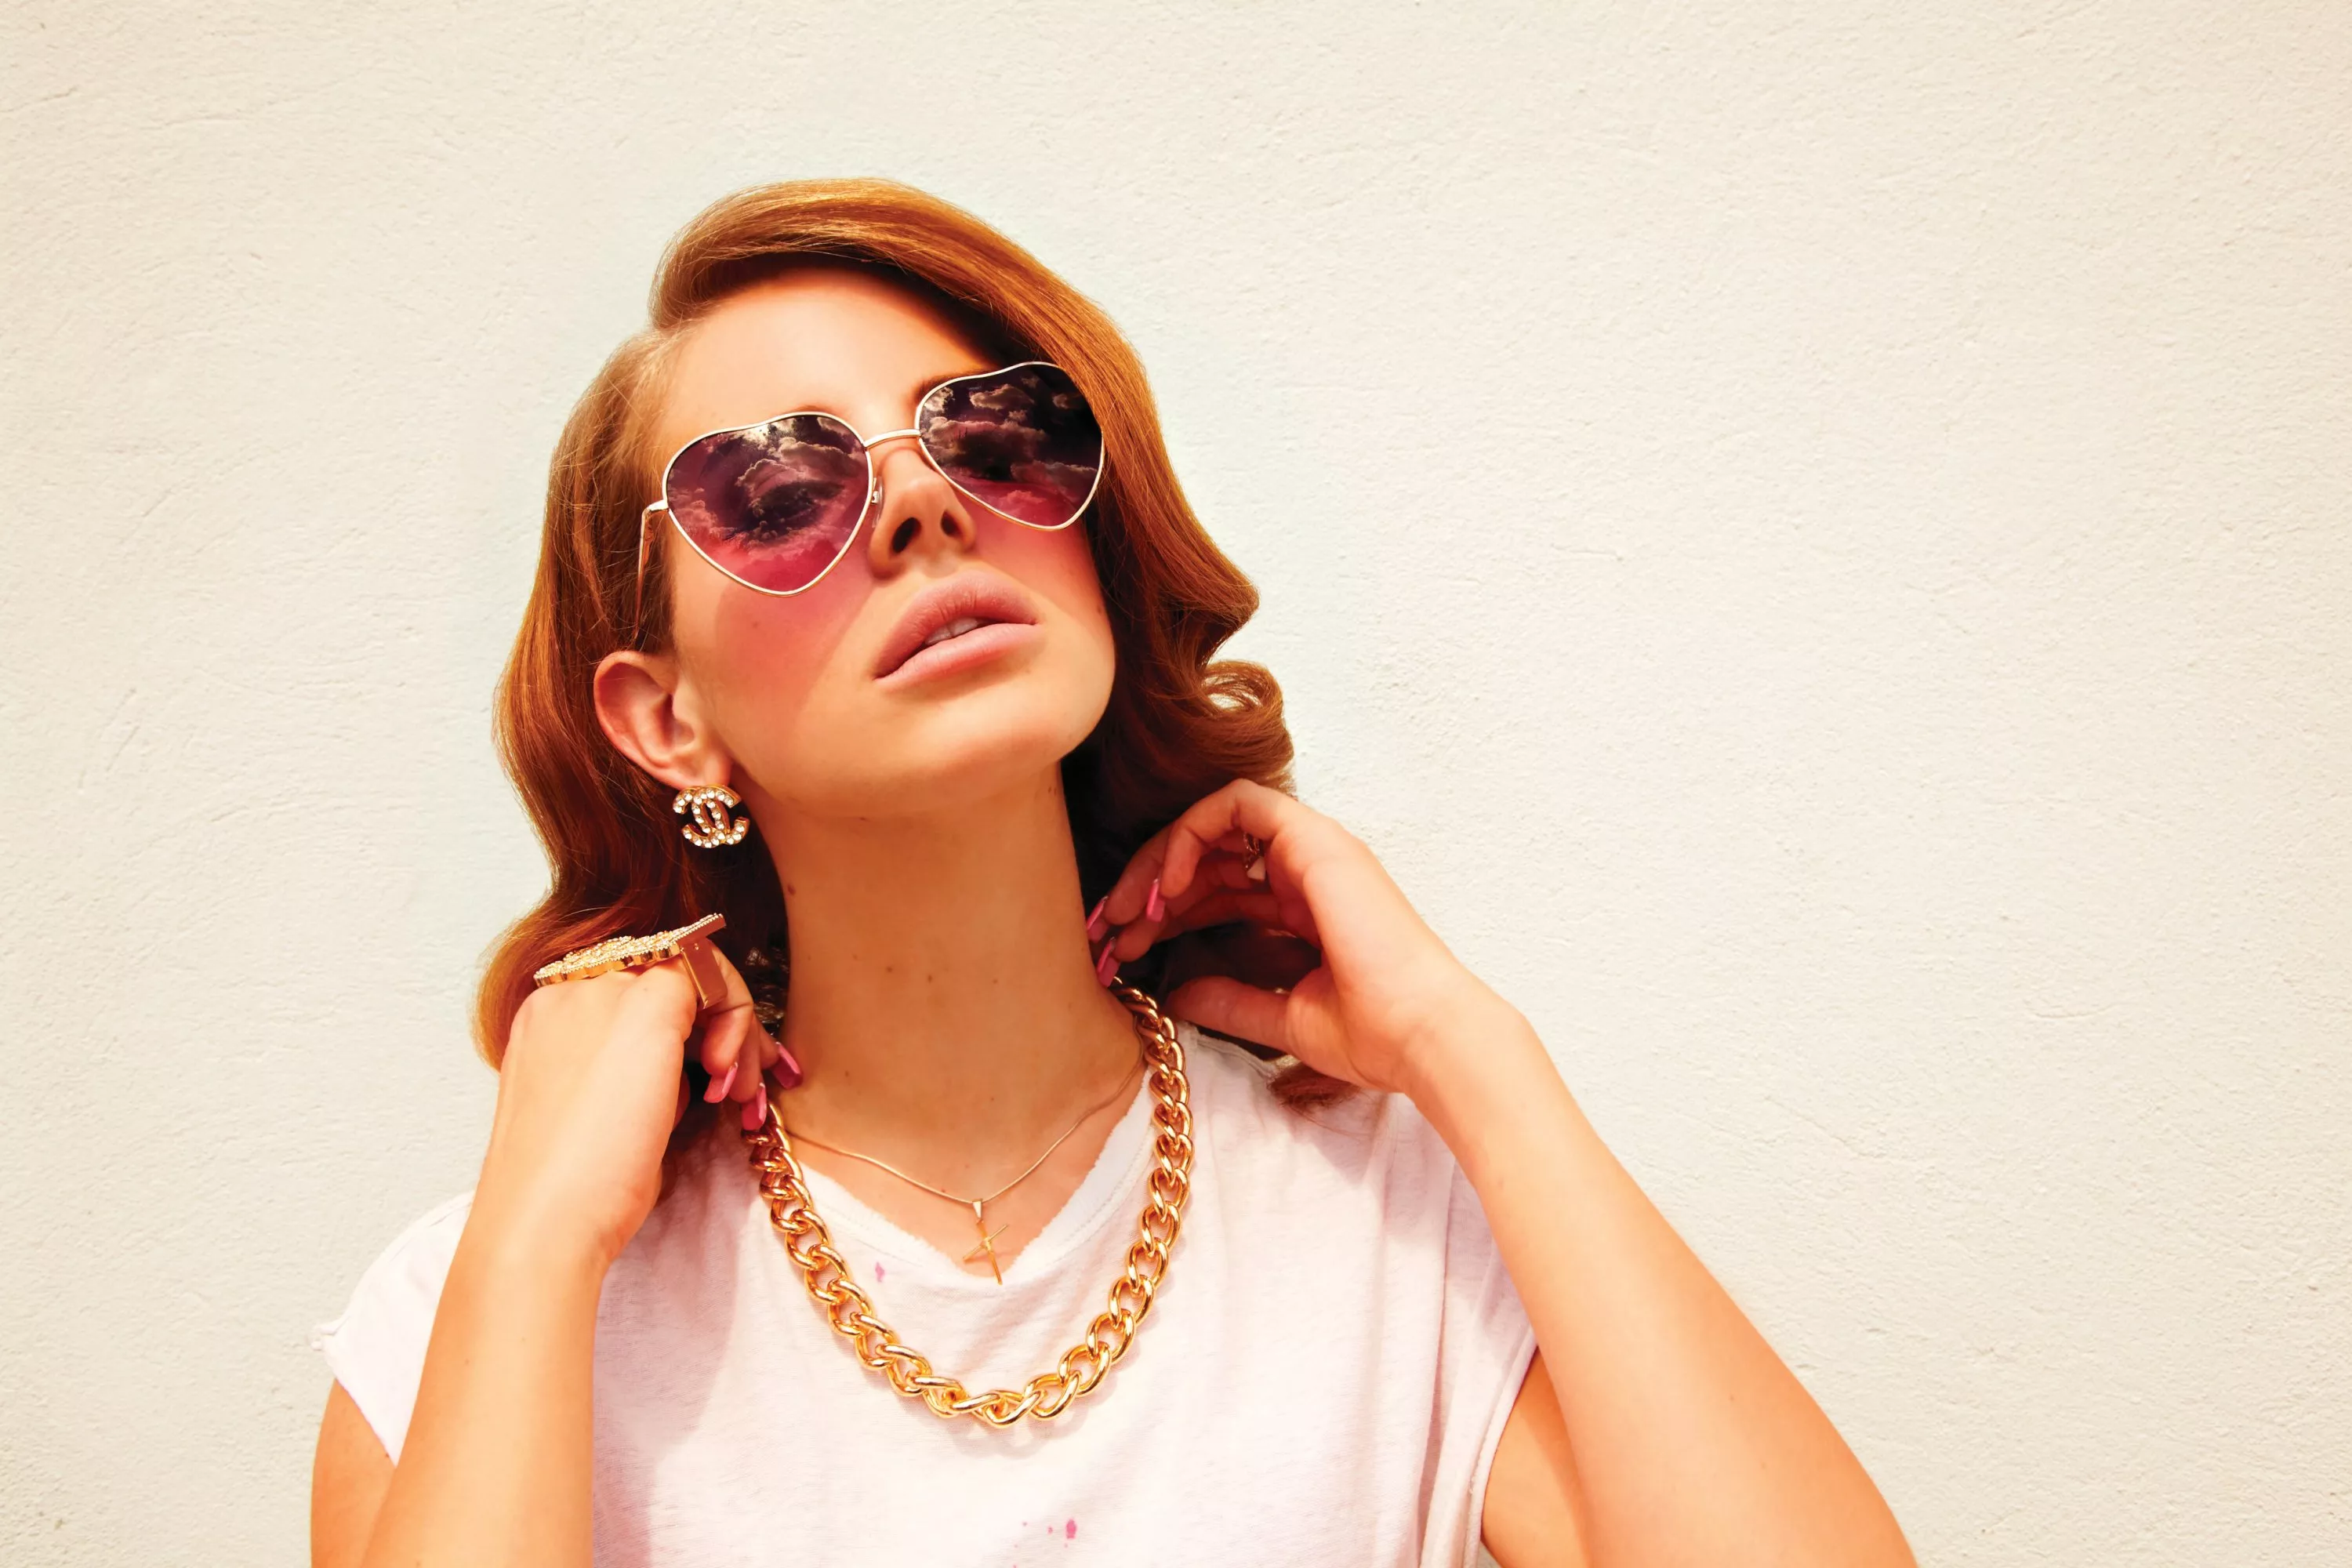 Se Lana Del Rey som femme fatale